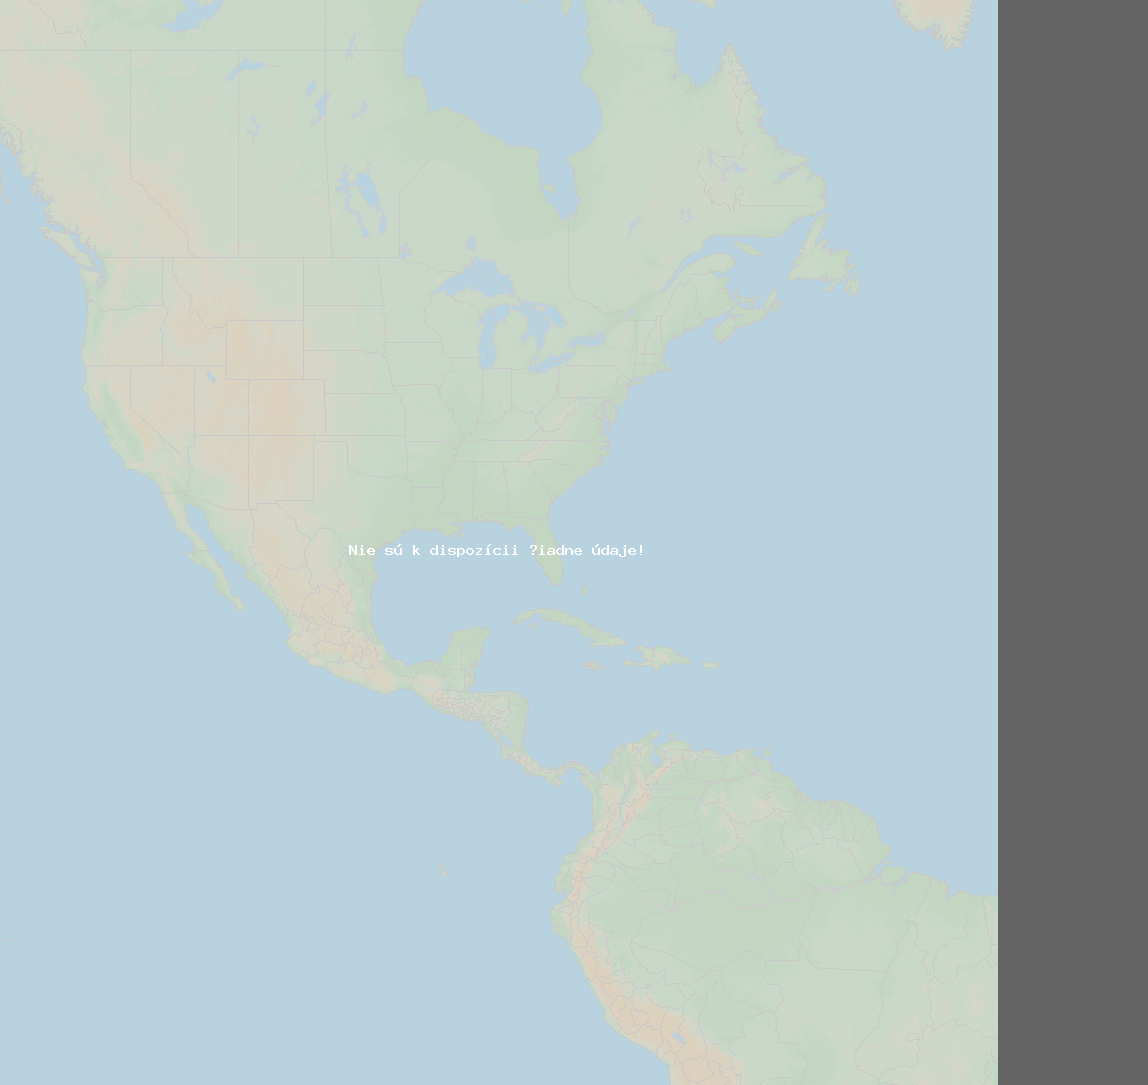 Pomer bleskov (Stanica Rockford (1737B)) North America 2019 Apríl